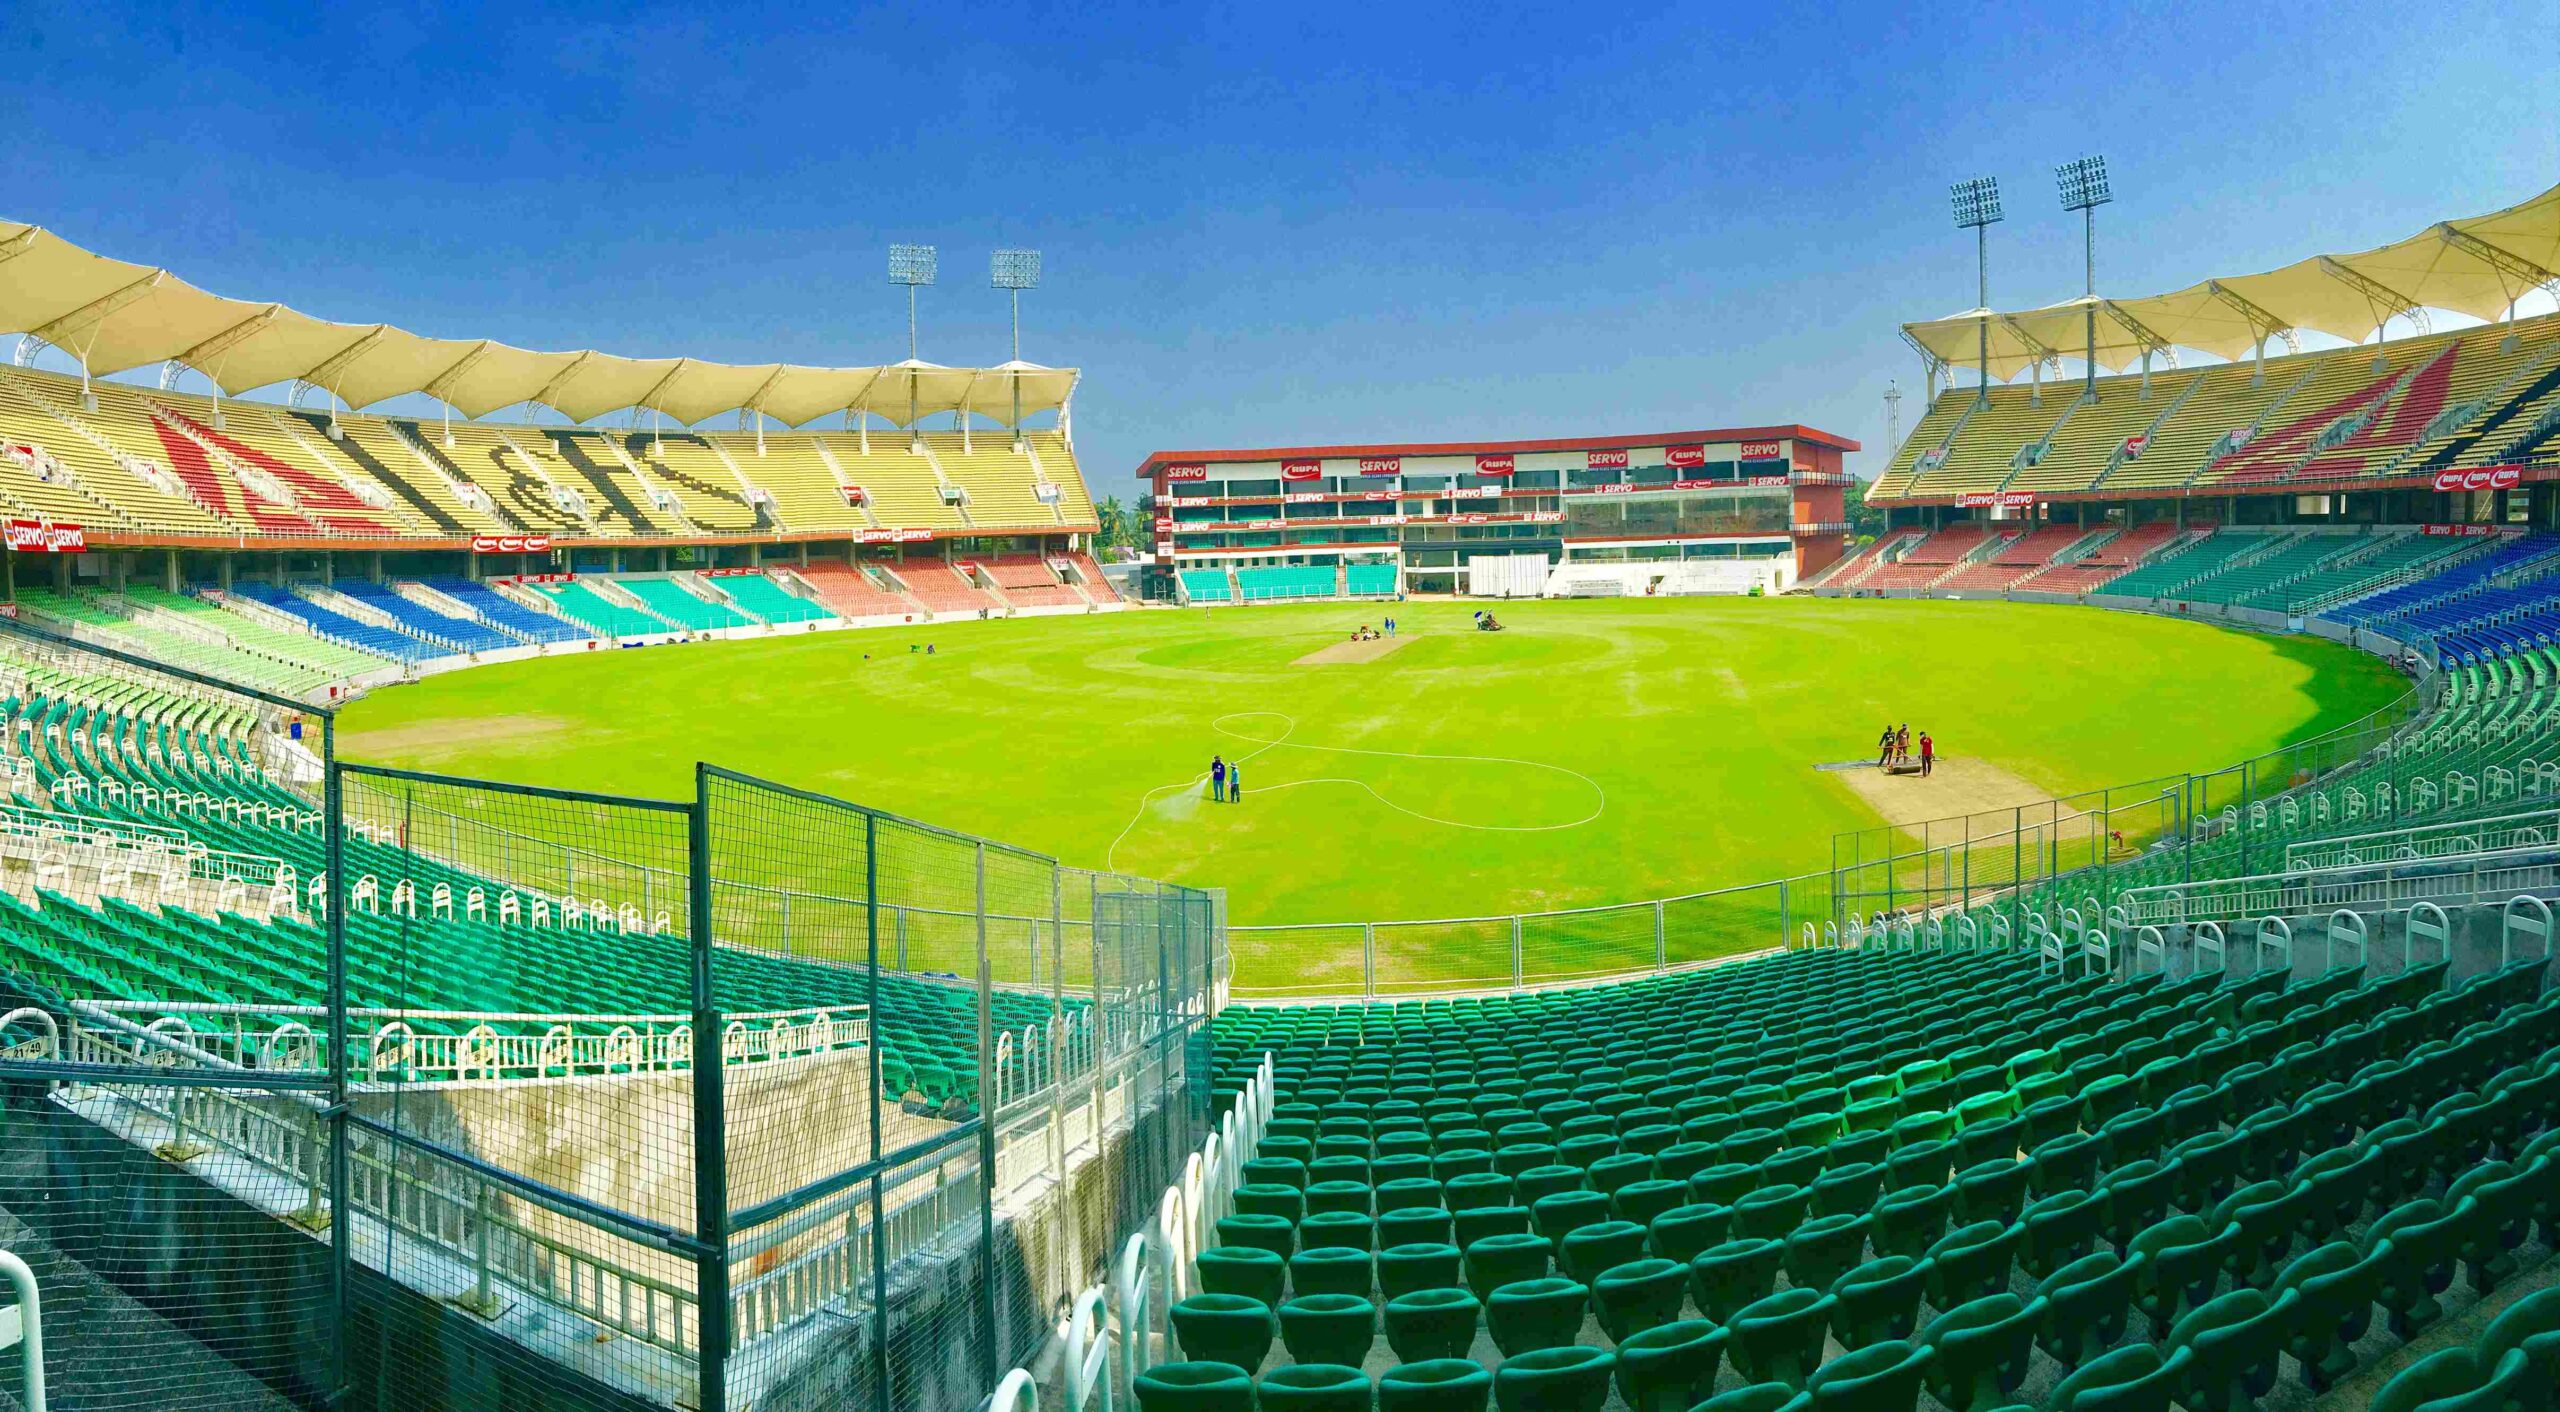 Pakistan’s Largest Cricket Stadium